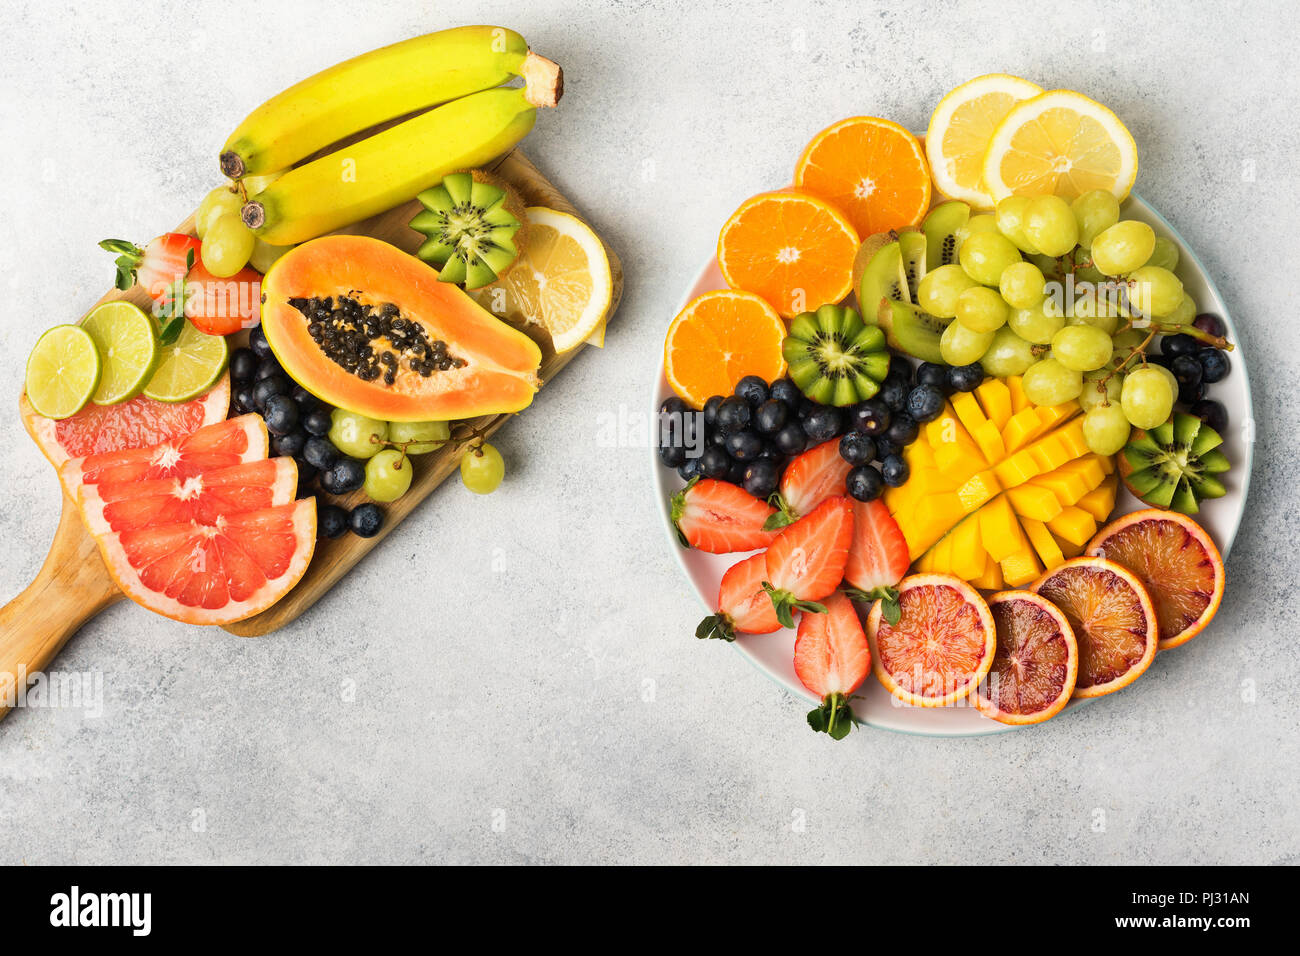 Fruits et baies sains en couleurs arc-en-ciel sur une assiette blanche et bois, fraises, mangue, raisins, bananes, pamplemousses sur la table gris clair, copy space, vue du dessus, selective focus Banque D'Images